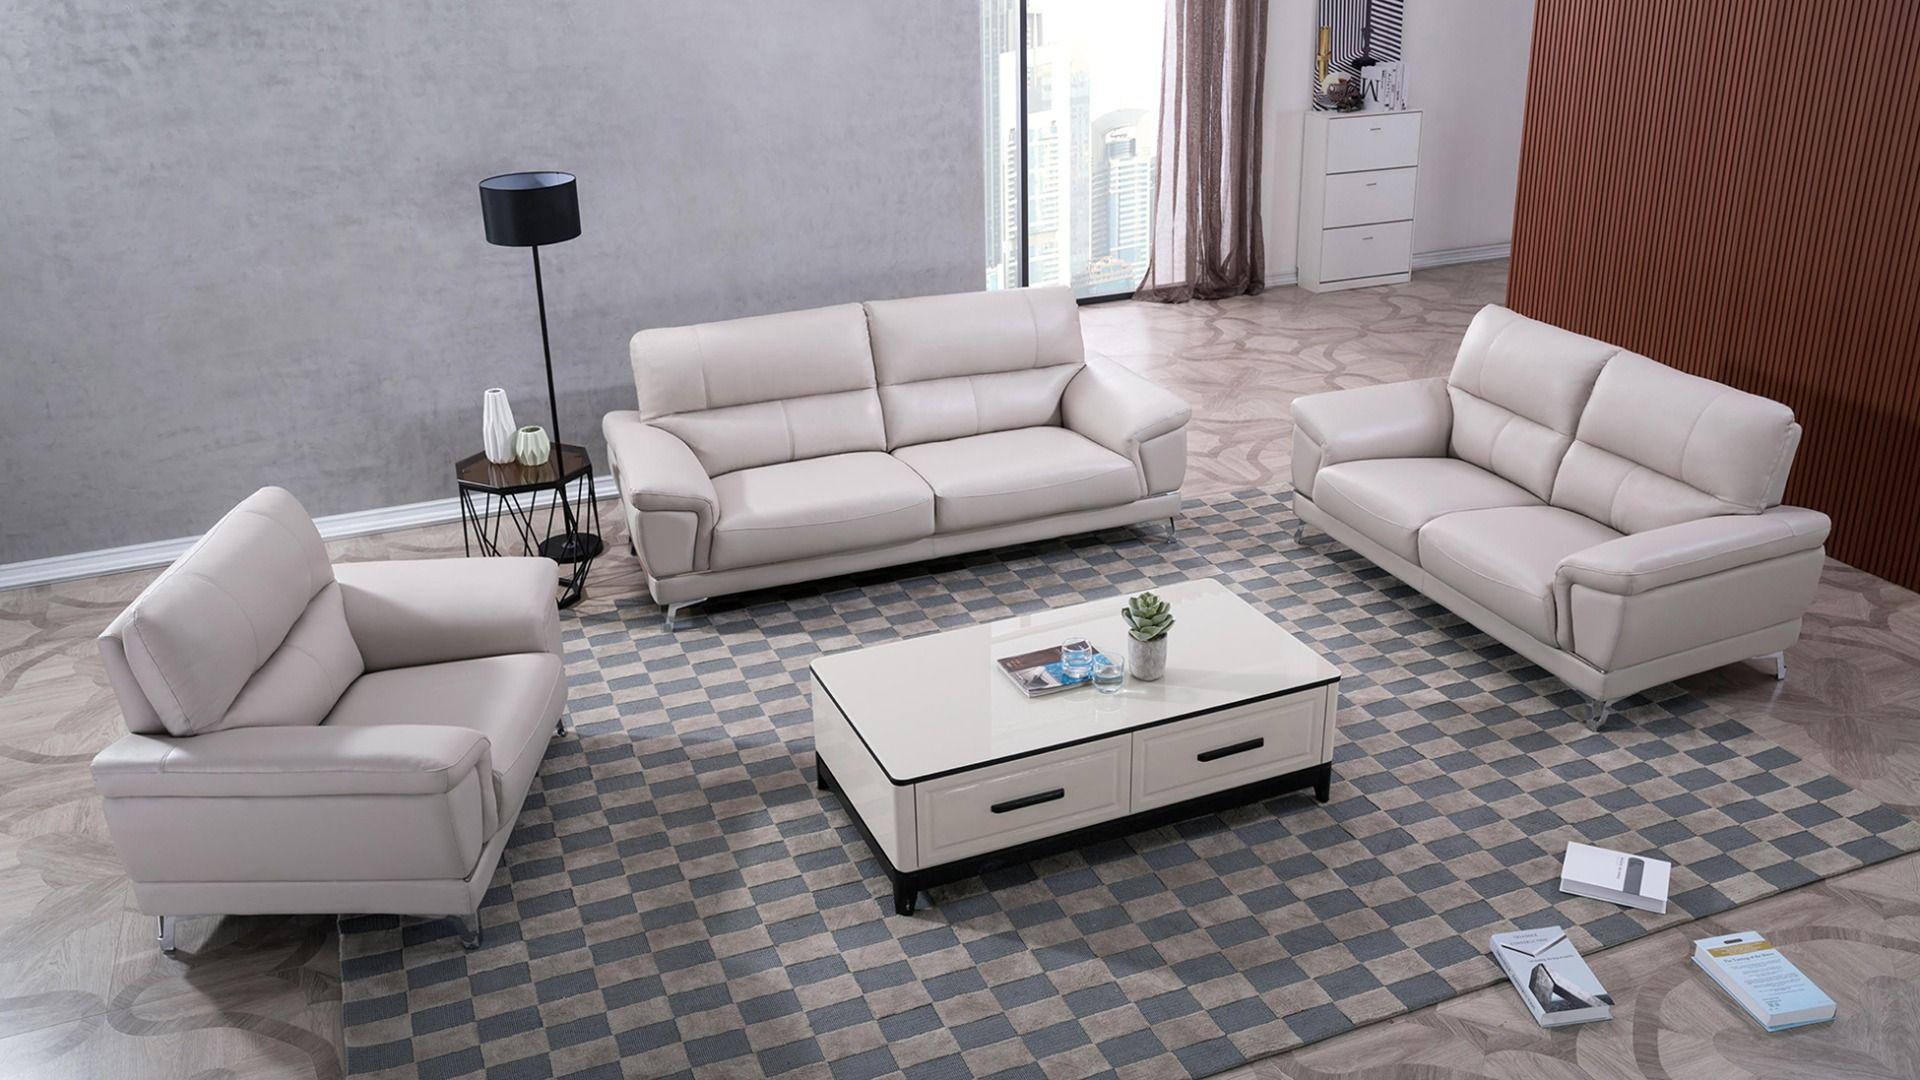 Contemporary, Modern Sofa Set EK151-LG EK151-LG-Set-3 in Light Gray Italian Leather